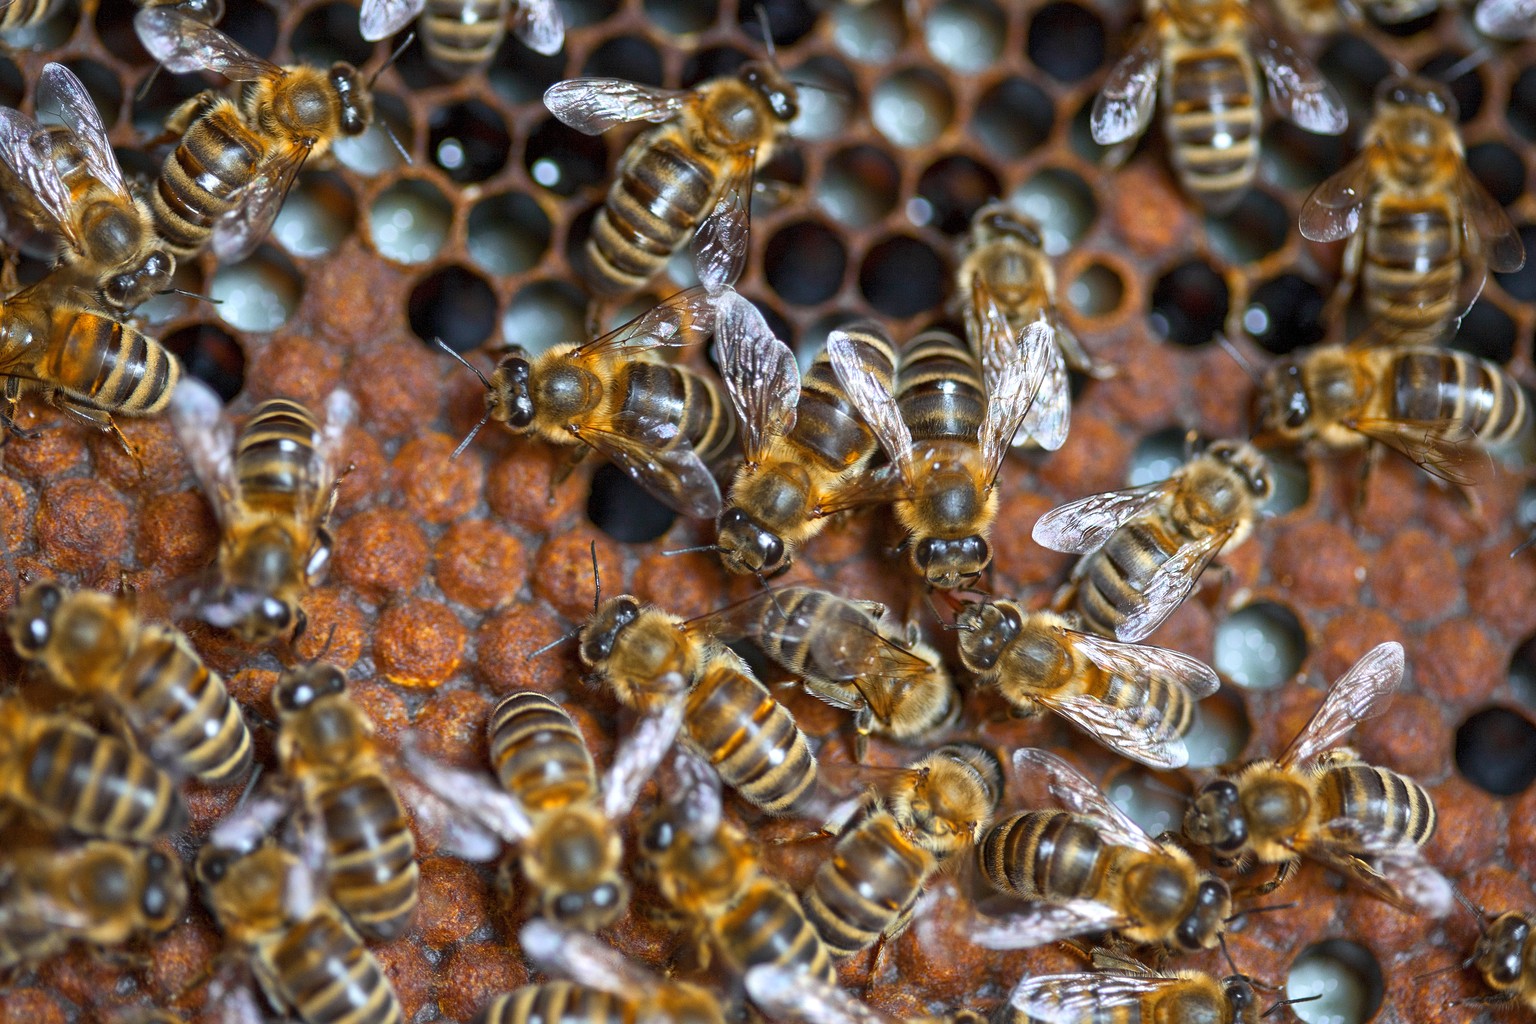 Britische Forscher testeten eine&nbsp;Alternative zu herkömmlichen Pestiziden, die für Bienen ungefährlich sein soll.&nbsp;